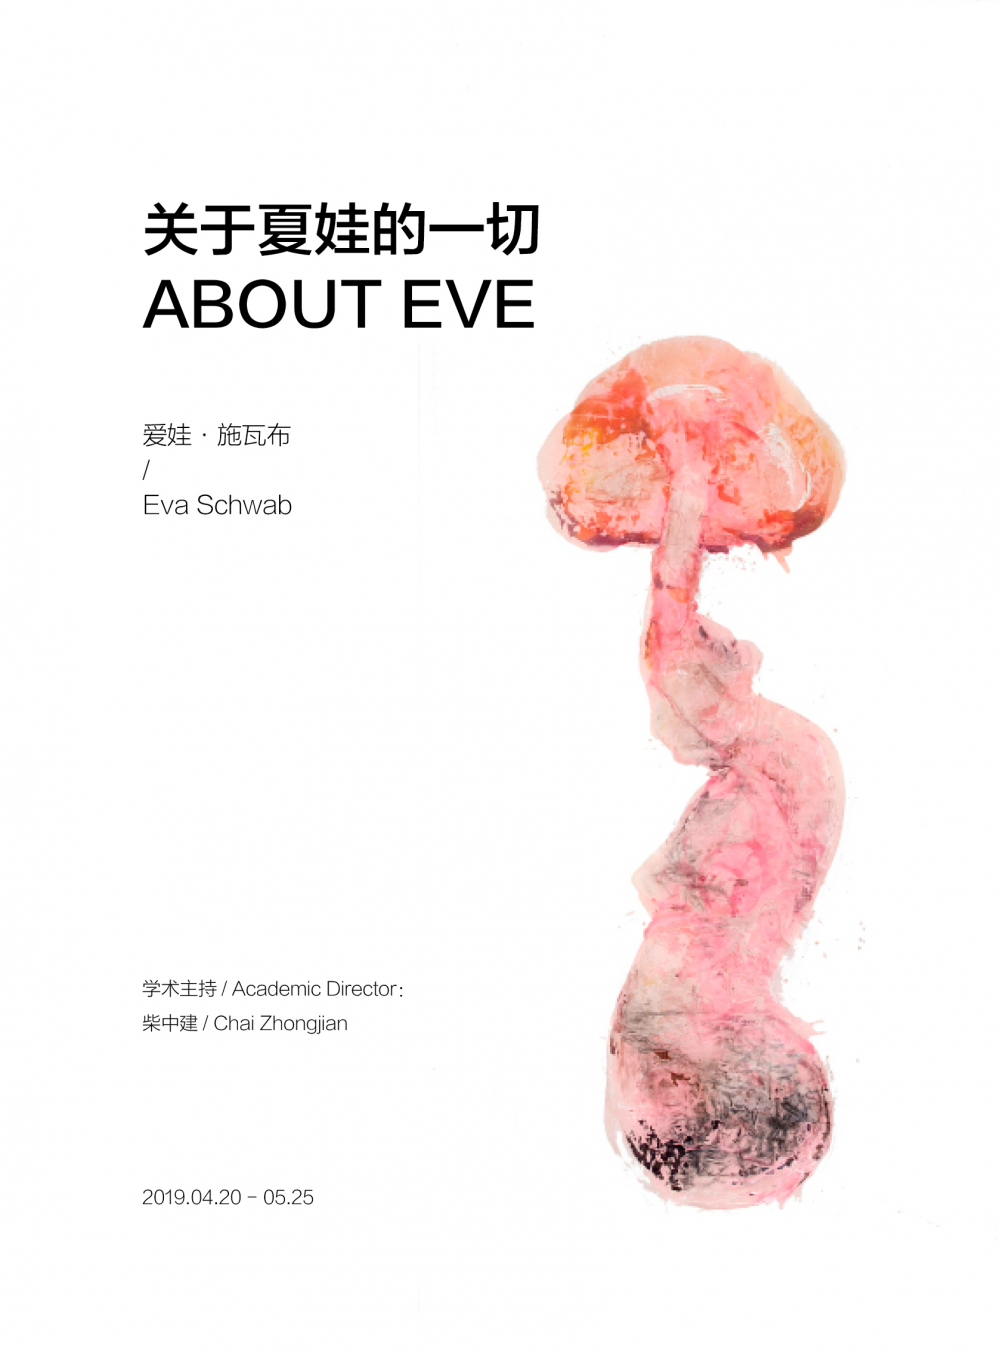 爱娃·施瓦布：关于夏娃的一切 Eva Schwab：About Eve